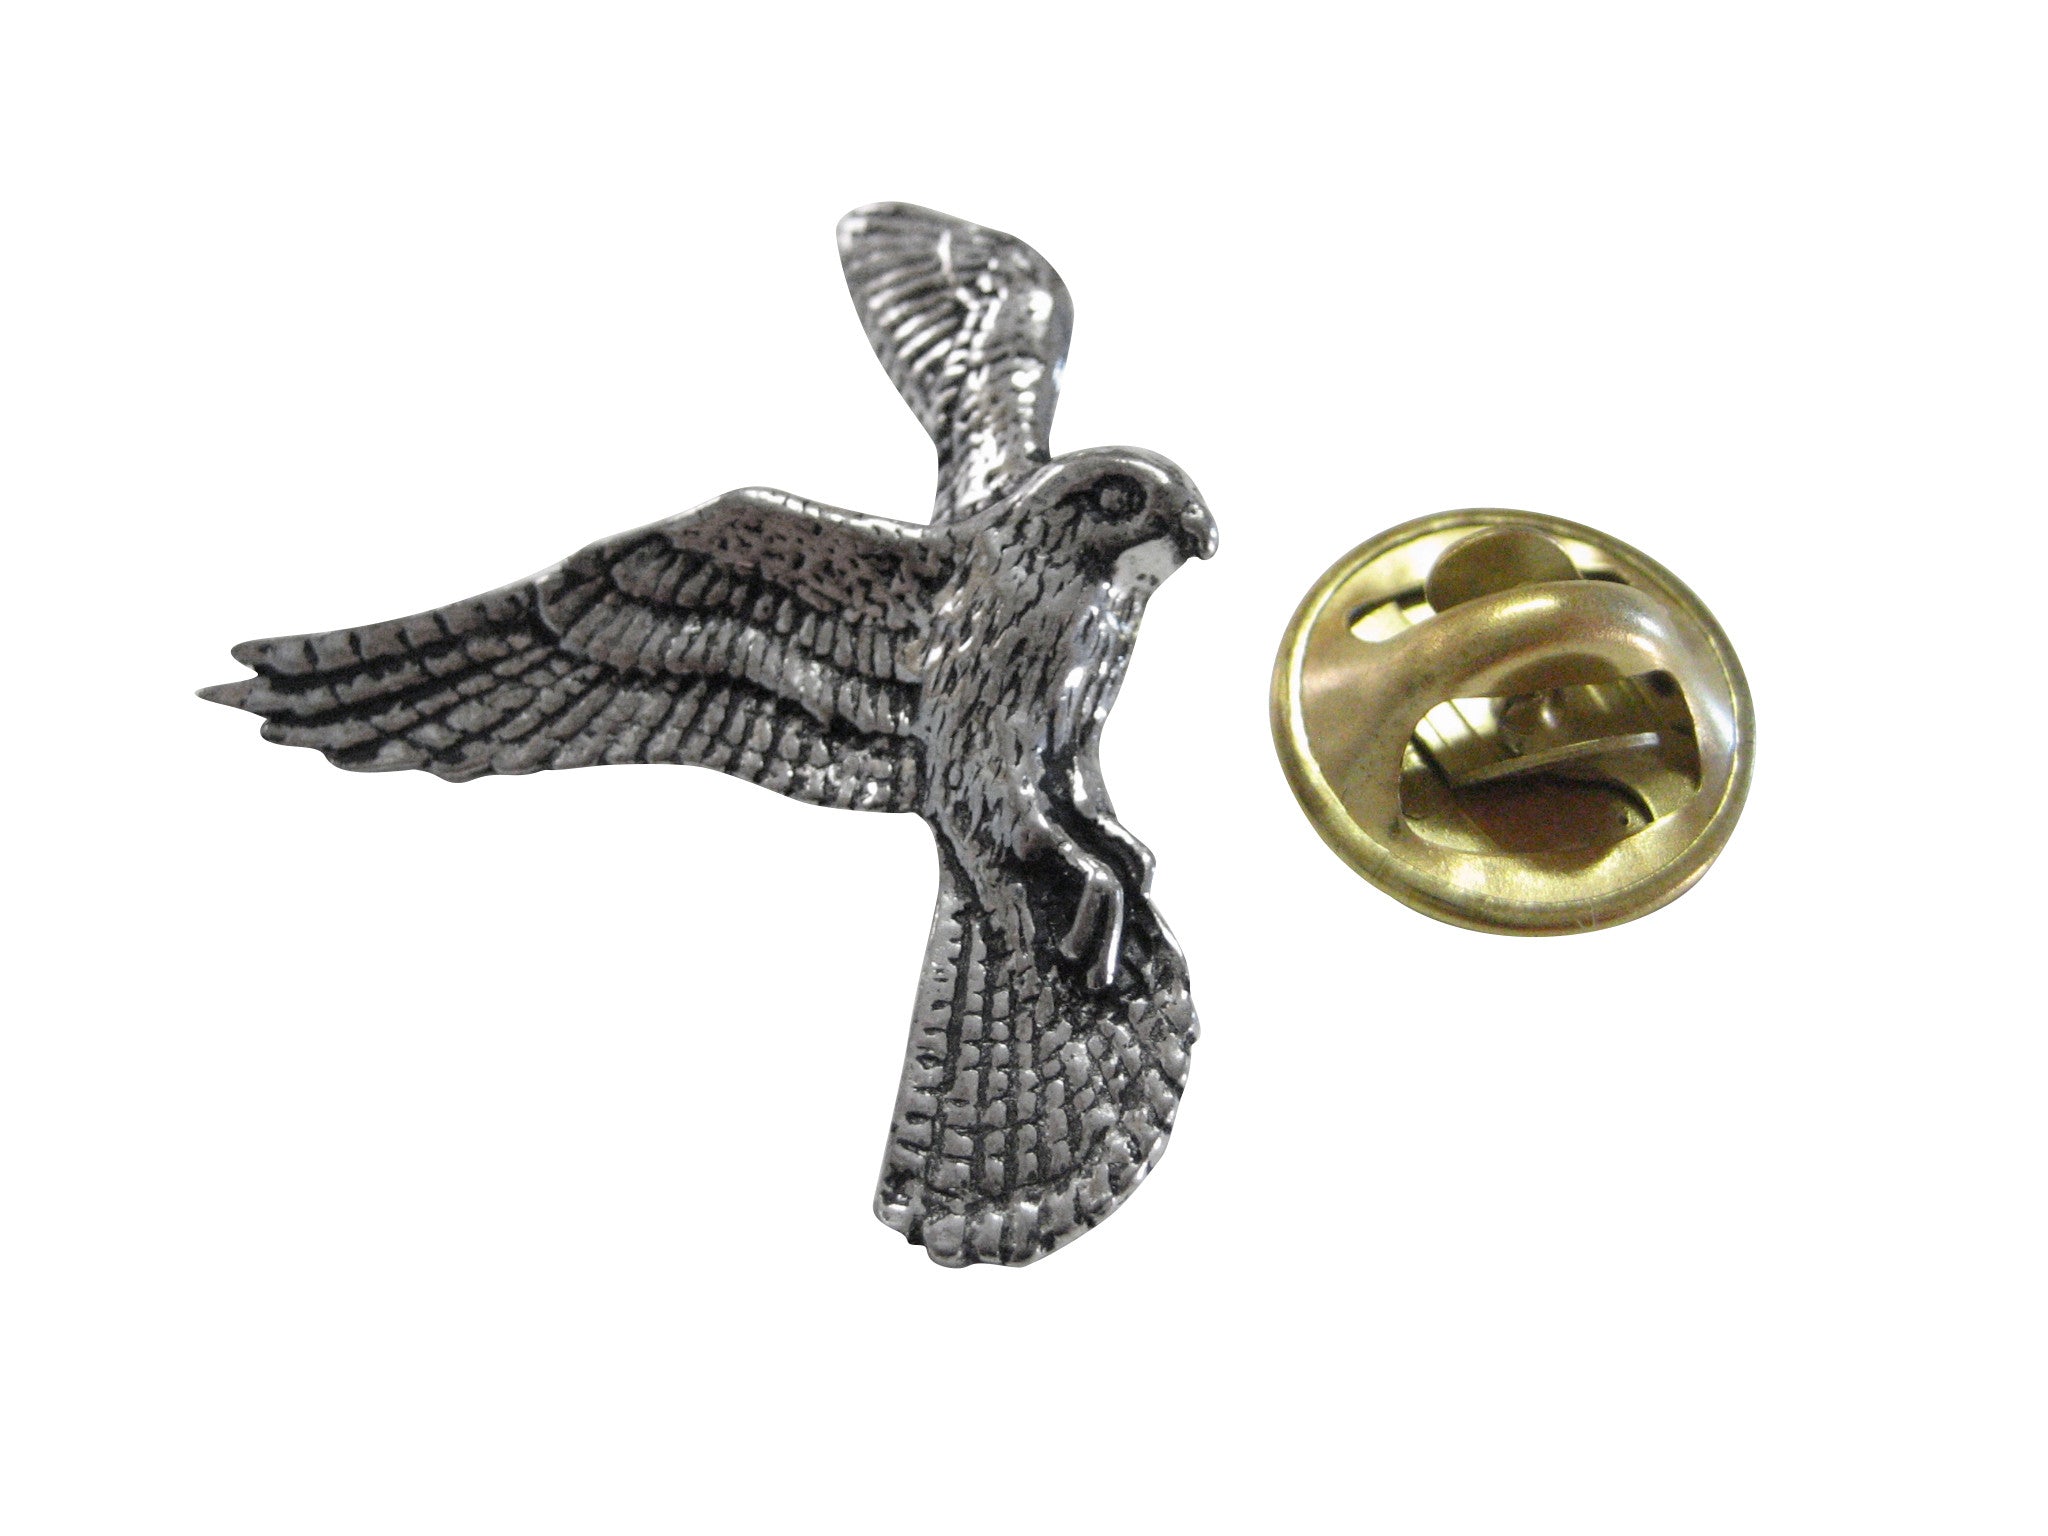 Kestrel Bird Lapel Pin